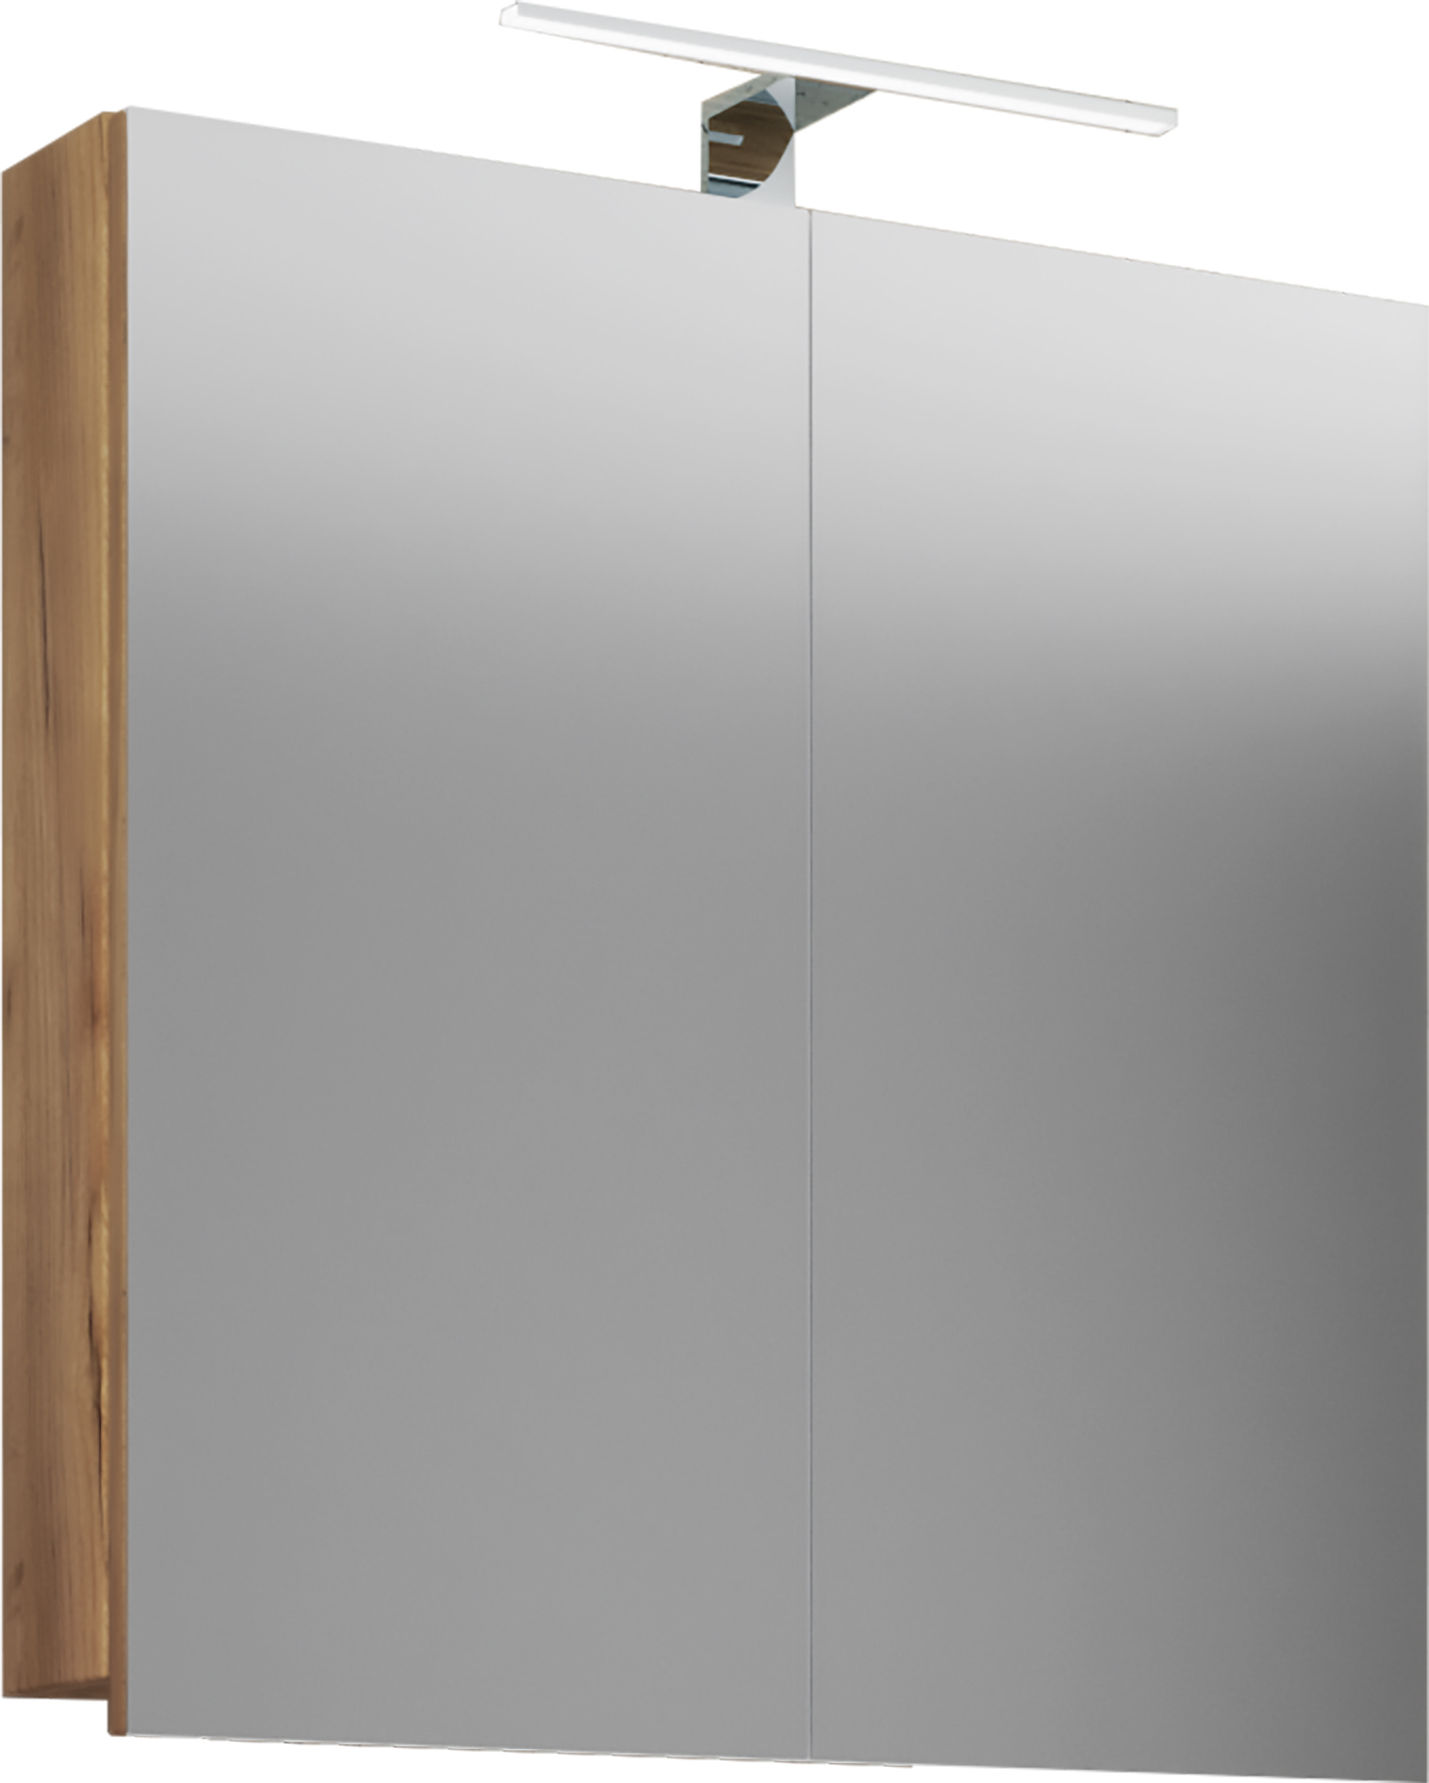 VCM Spiegelschrank Badspiegel Spiegel Badezimmer Hängespiegel Badinos 60 cm  Holz Badmöbel Spiegelschrank Badinos Farbe: Honig-Eiche, Ausführung: Mit  LED-Beleuchtung | Weltbild.de